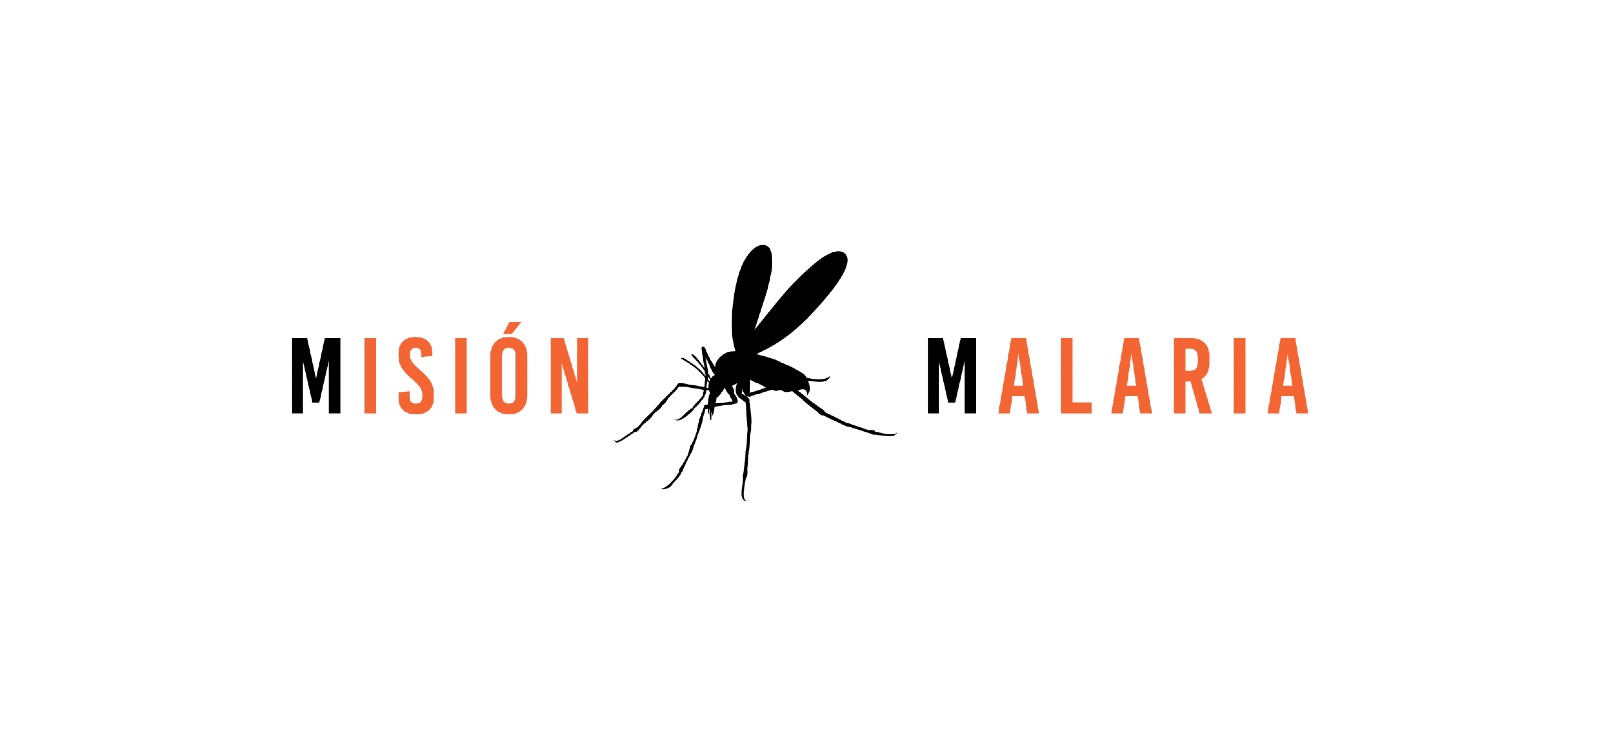 exhibition, malaria